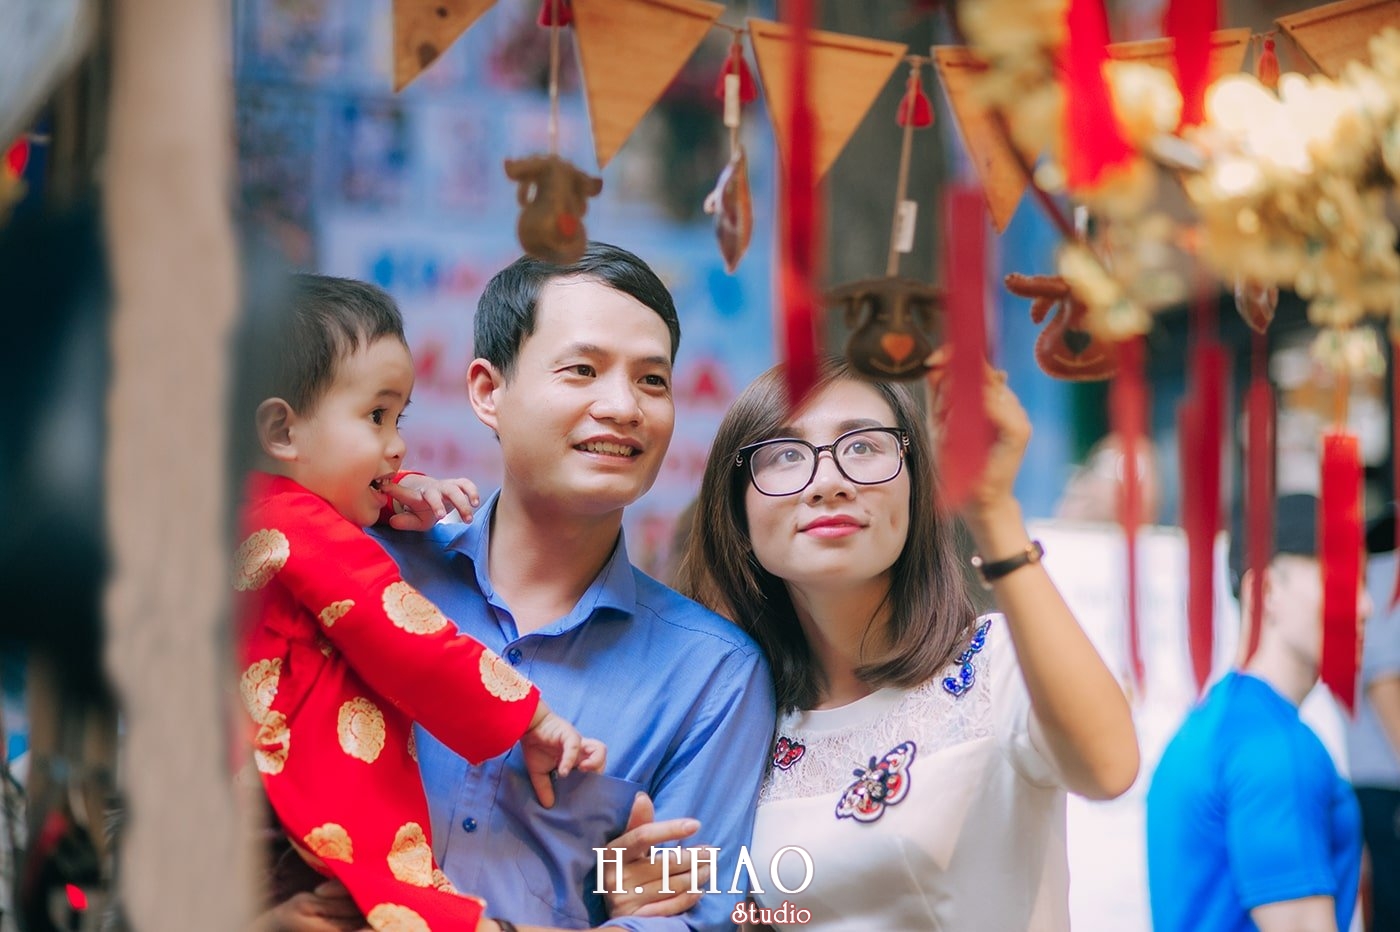 Anh gia dinh anh phong 2 - Ảnh chụp gia đình anh Phong Hồ, Quận 1 Tp.HCM